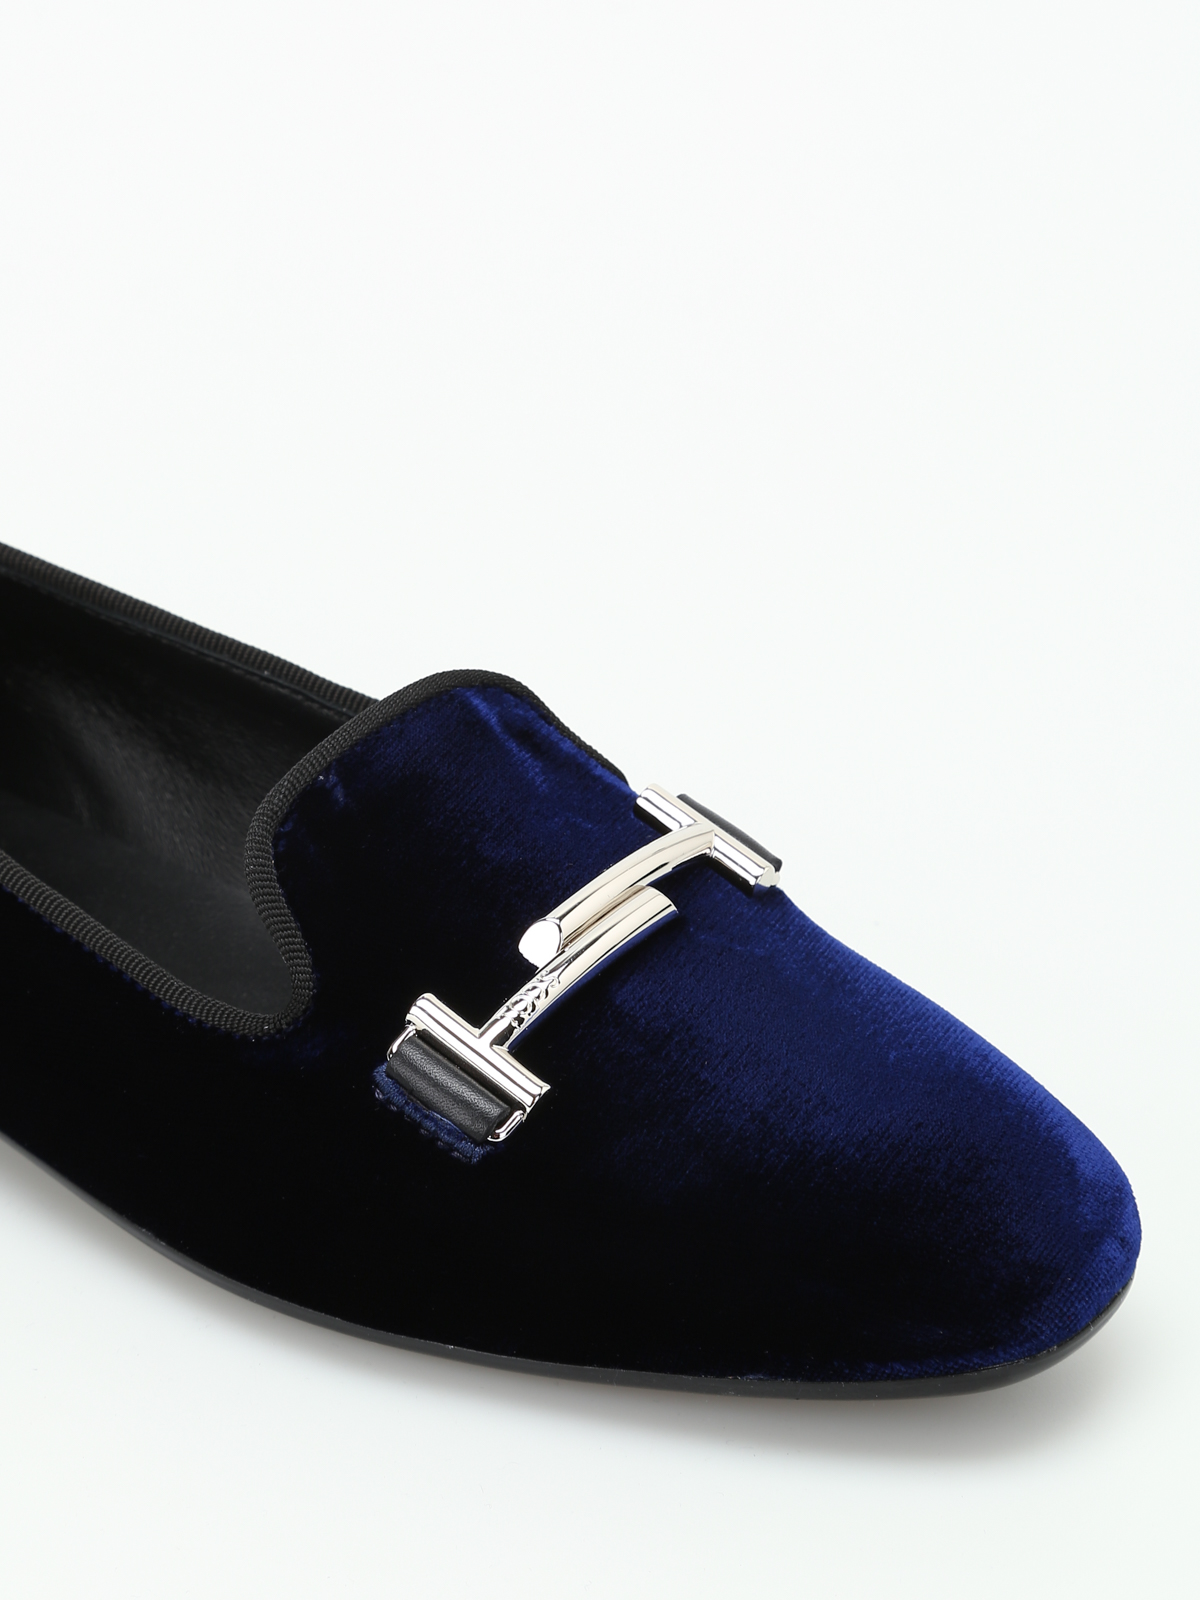 dark navy blue loafers